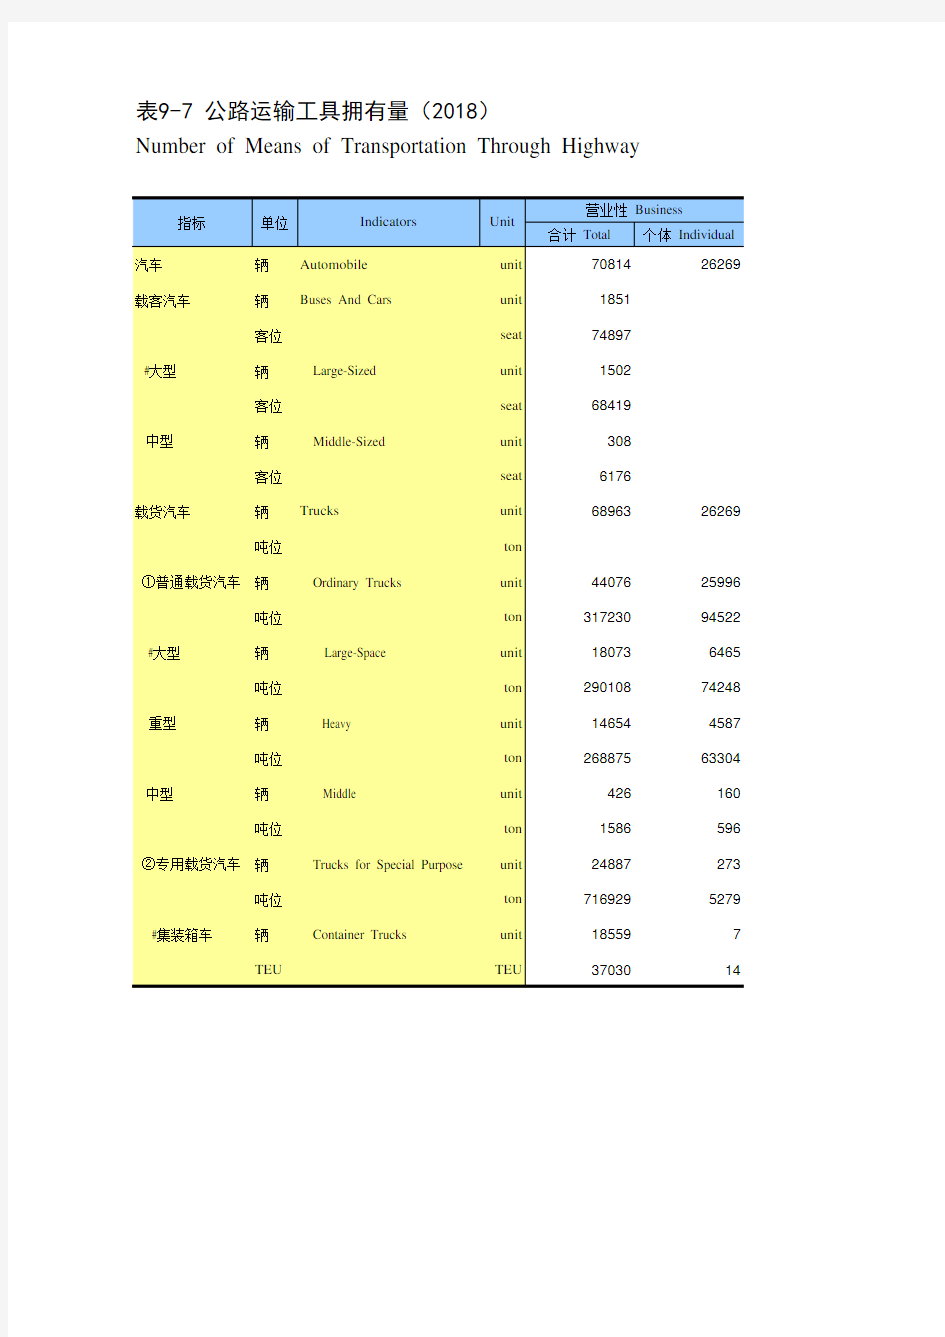 浙江宁波市社会经济发展统计年鉴指标数据：9-7 公路运输工具拥有量(2018)